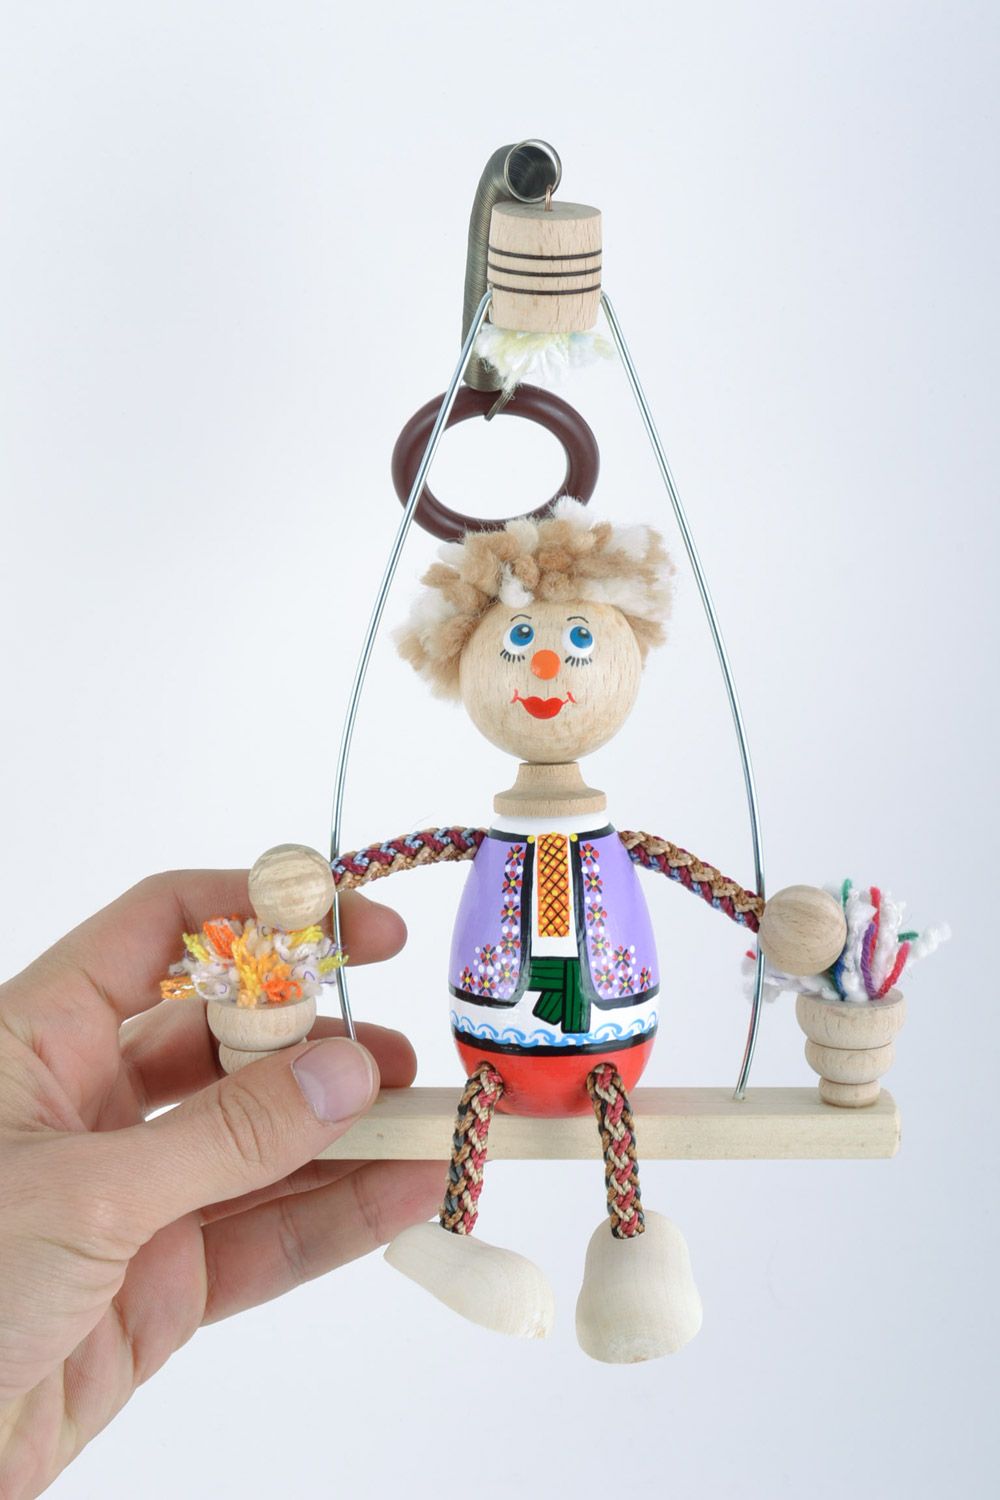 Игрушка из дерева на пружинке ручной работы расписанная красками в виде клоуна фото 2